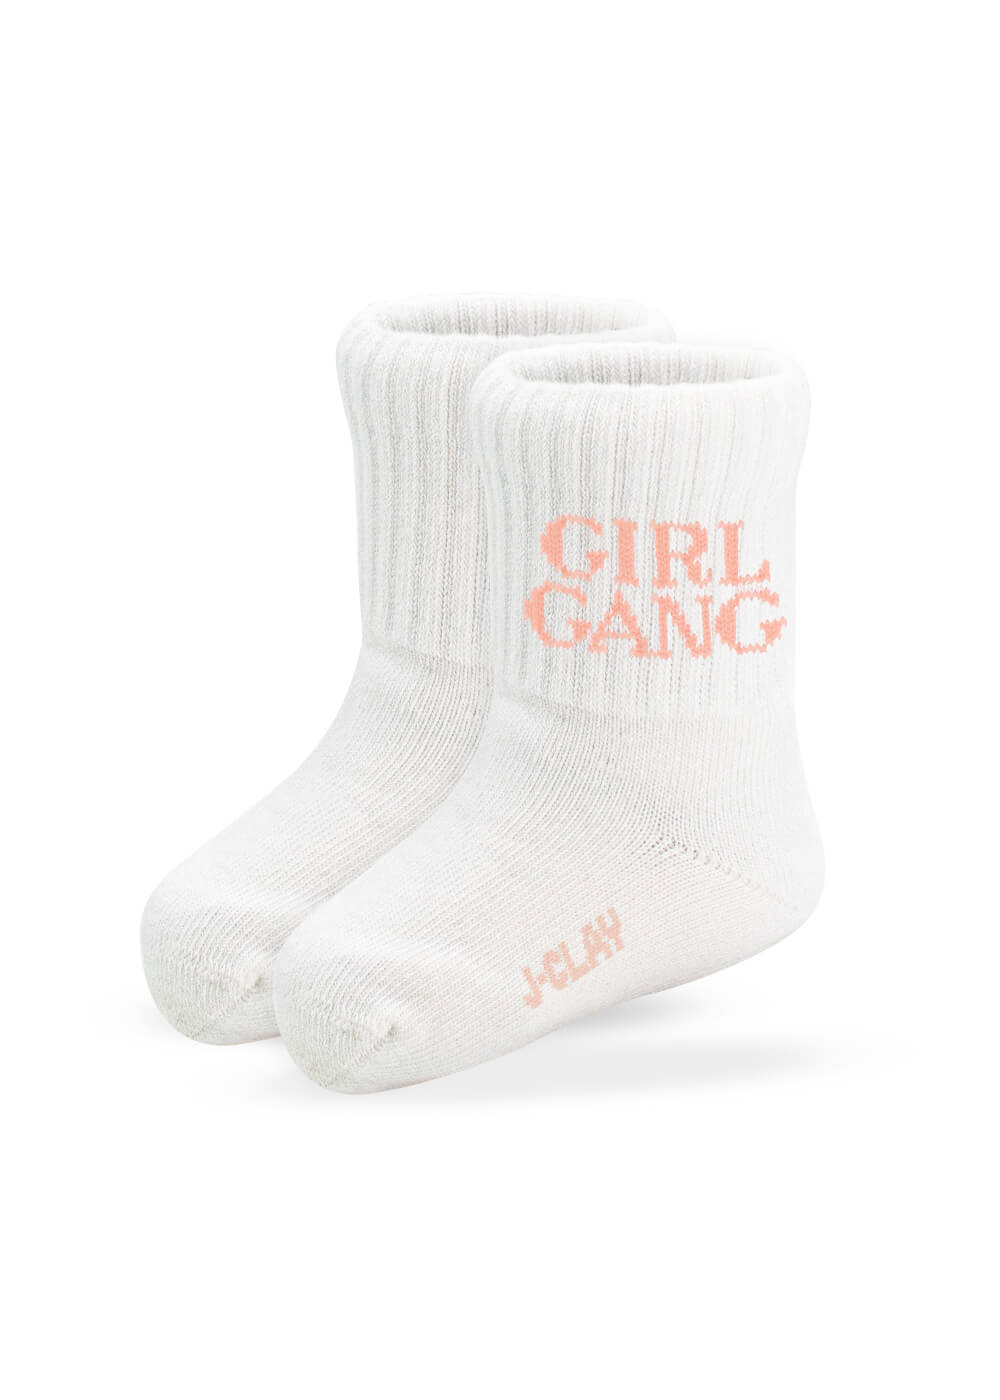 Girl Gang - Fam Pack